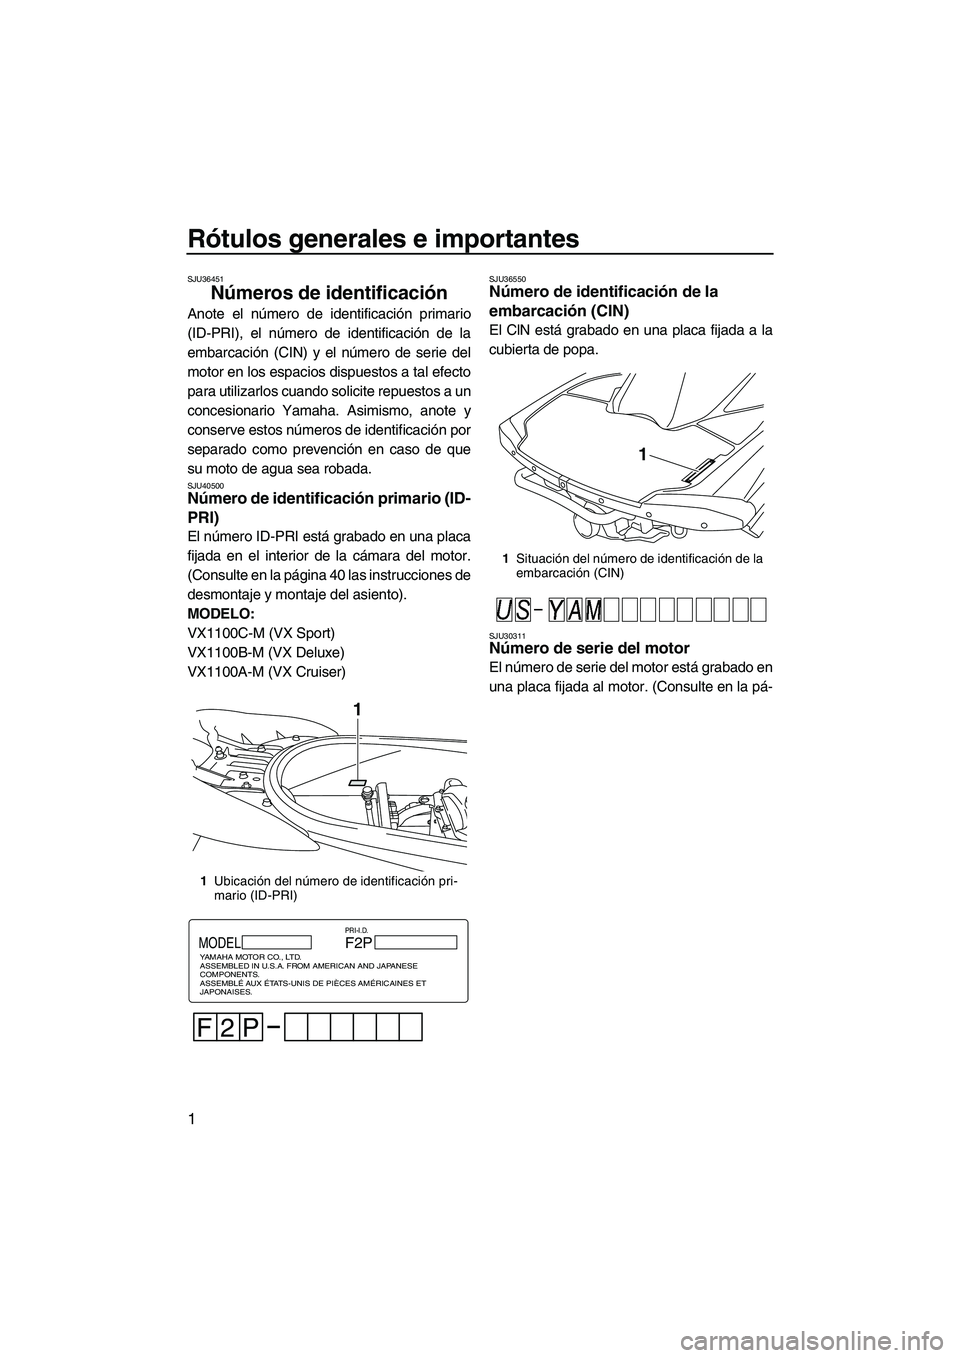 YAMAHA VX SPORT 2013  Manuale de Empleo (in Spanish) Rótulos generales e importantes
1
SJU36451
Números de identificación 
Anote el número de identificación primario
(ID-PRI), el número de identificación de la
embarcación (CIN) y el número de s